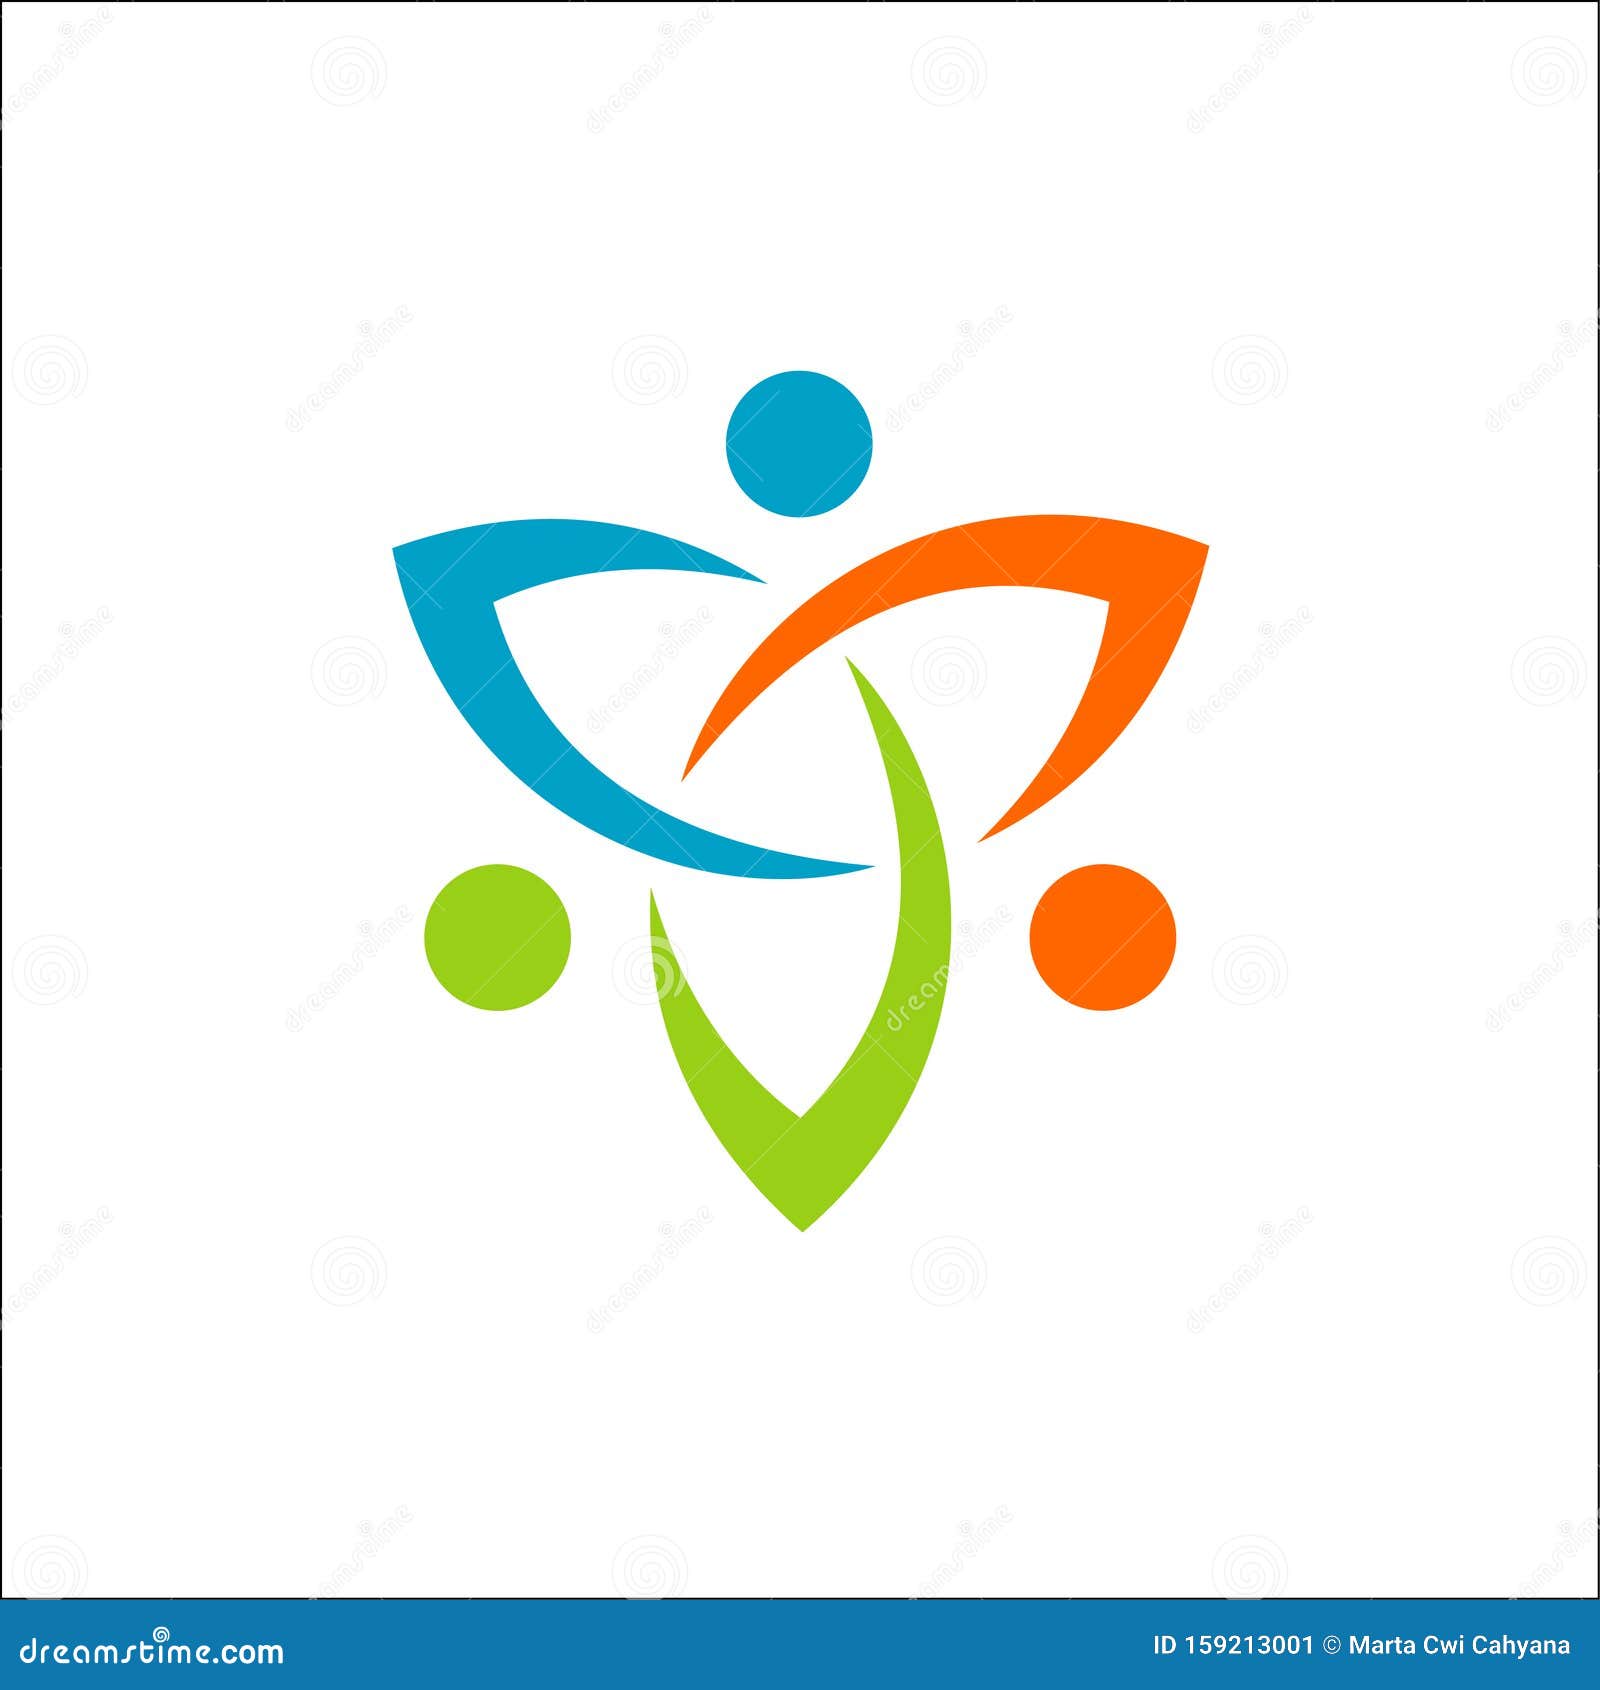 Futuristic Community Logo Vector Icon Elements Template Stock Vector ...